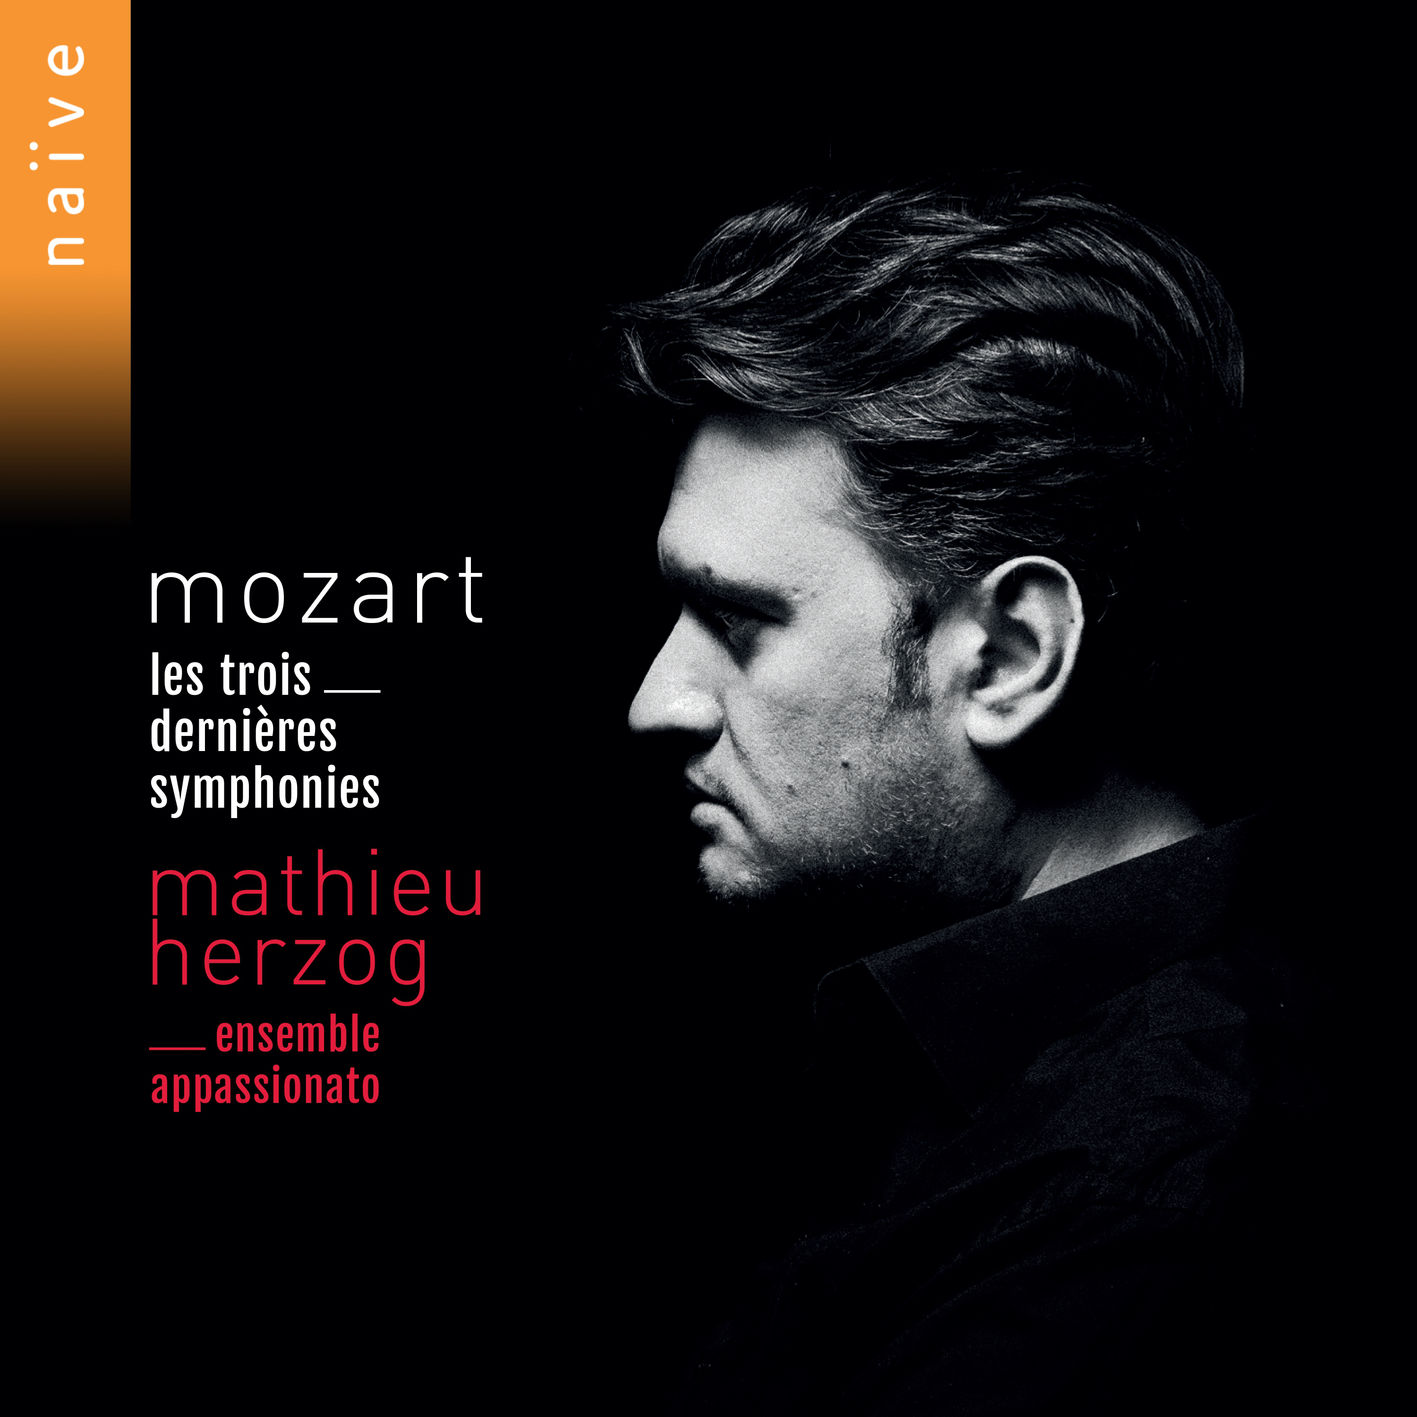 Mathieu Herzog, Ensemble Appassionato – Mozart: Les trois dernieres symphonies (2018) [FLAC 24bit/96kHz]